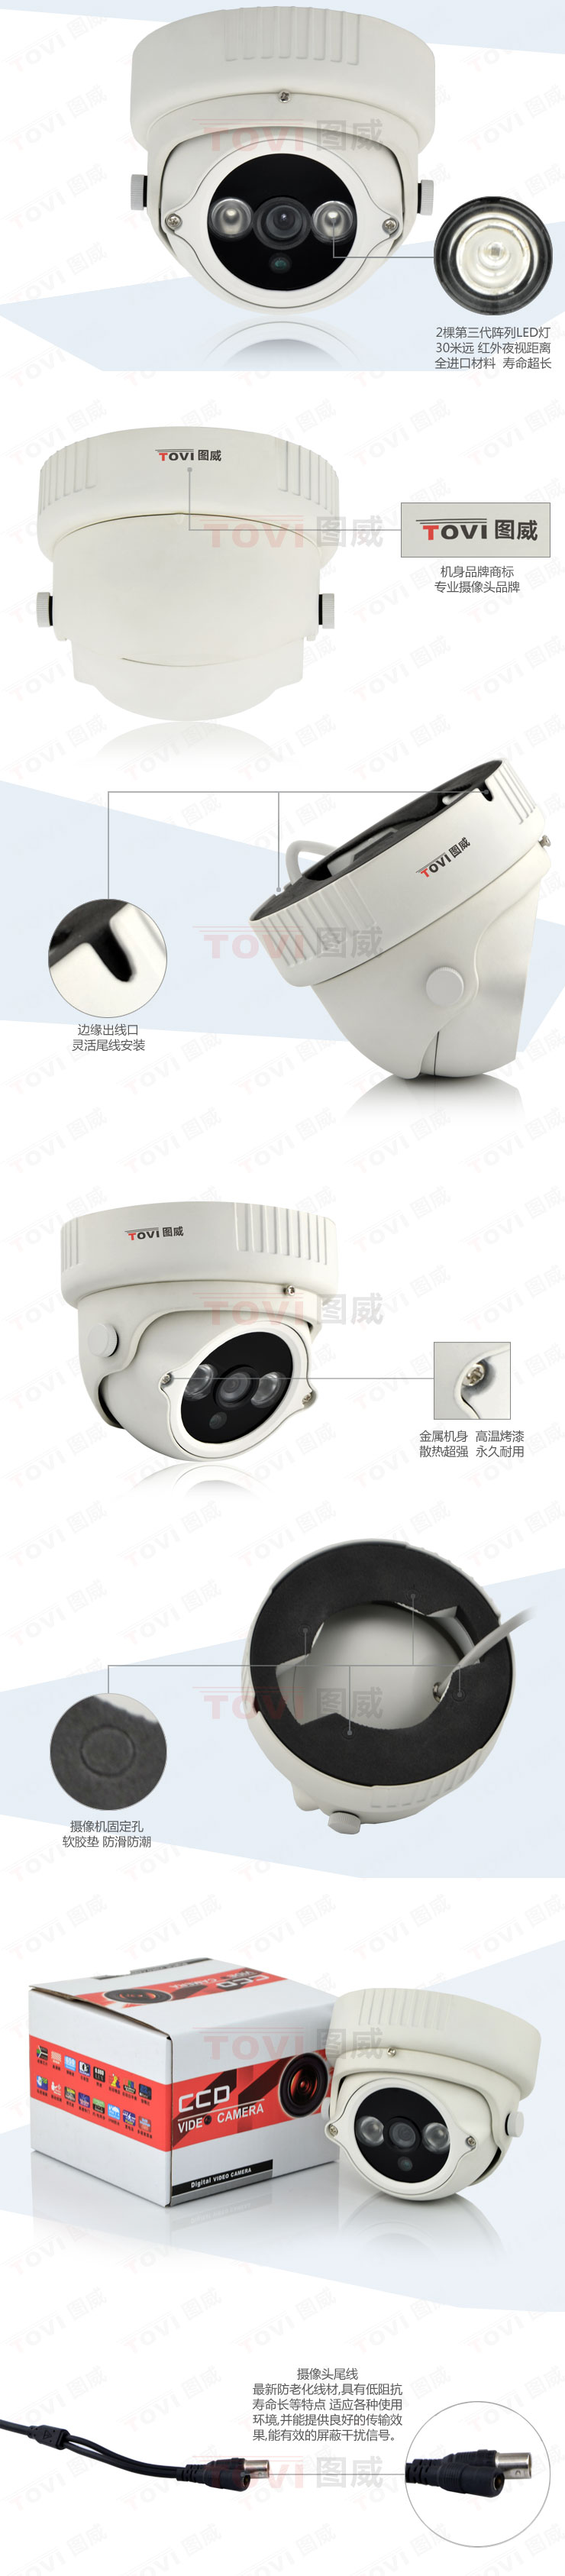 图威TV-CE2A18-IT3摄像机展示